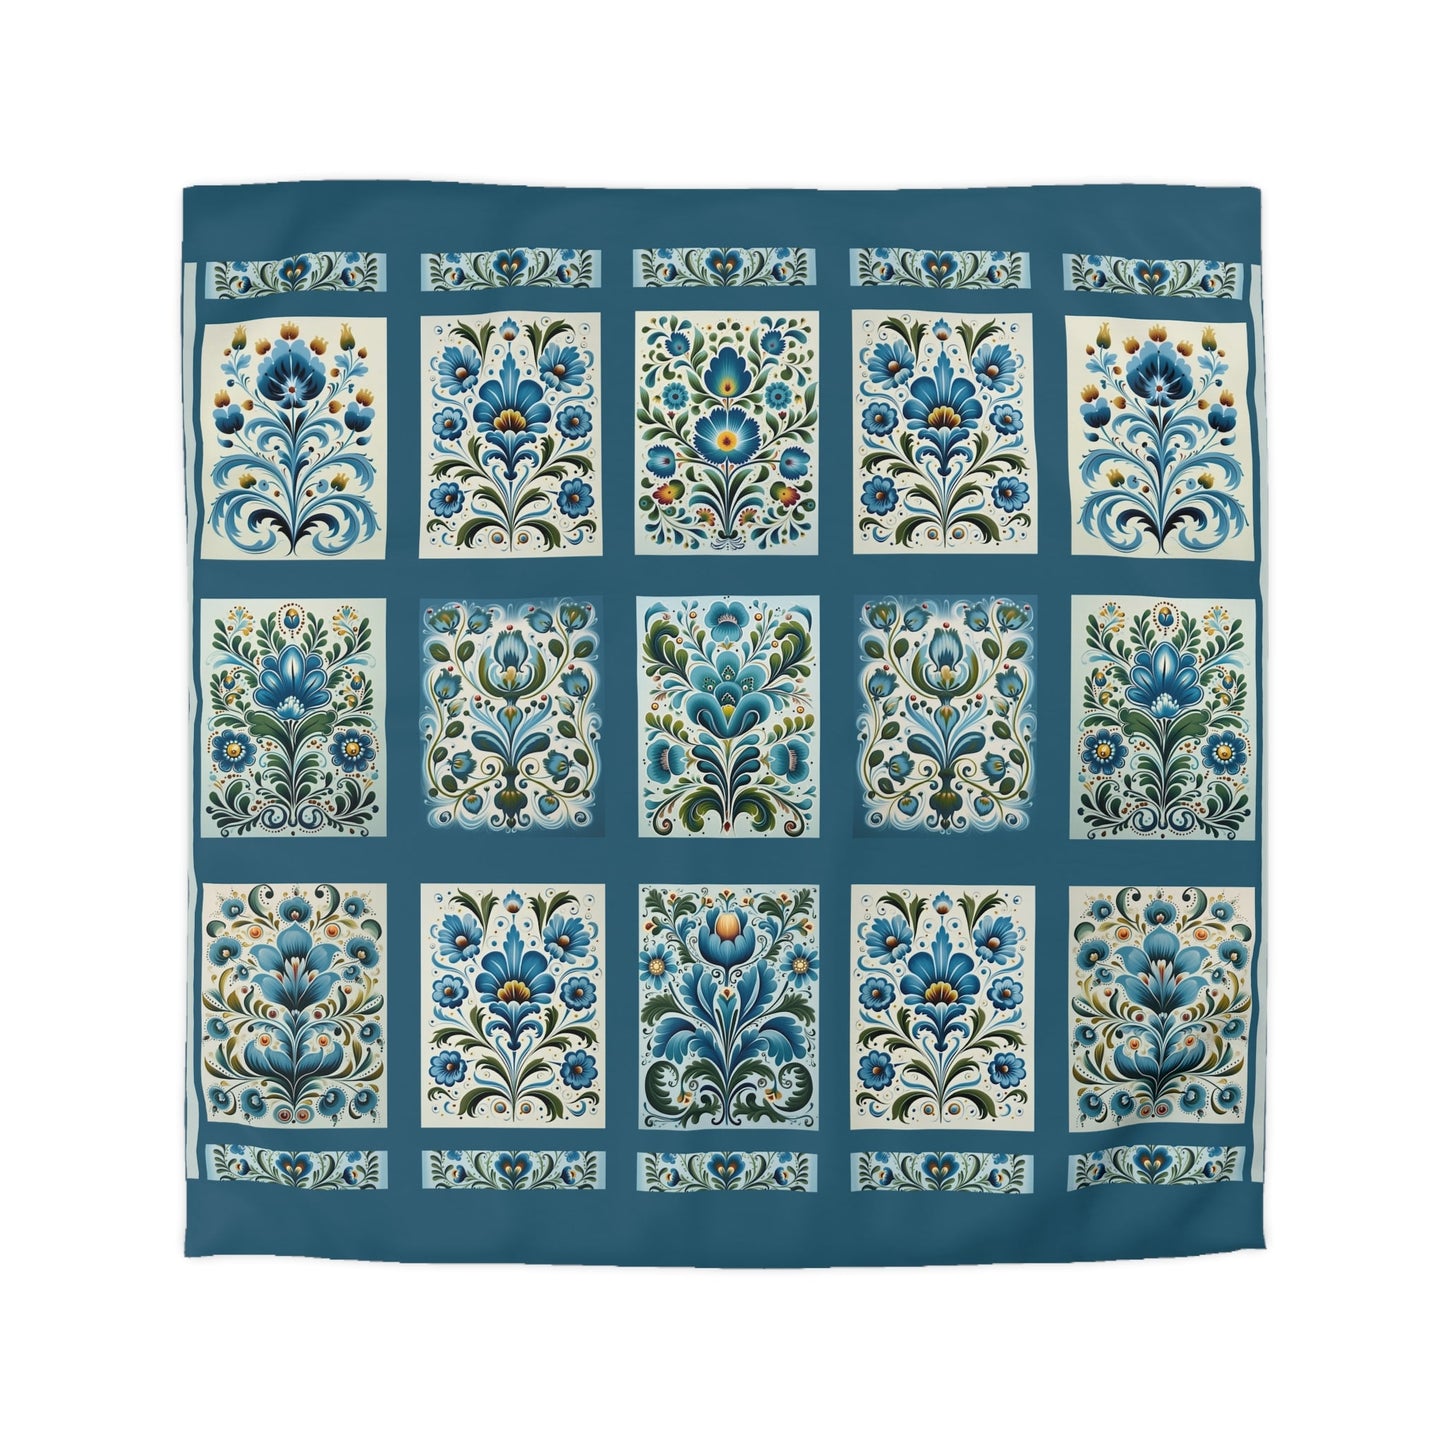 King - Queen Duvet - Scandi Blue Folk Art Design, Original Scandinavian Style Coverlet - FlooredByArt